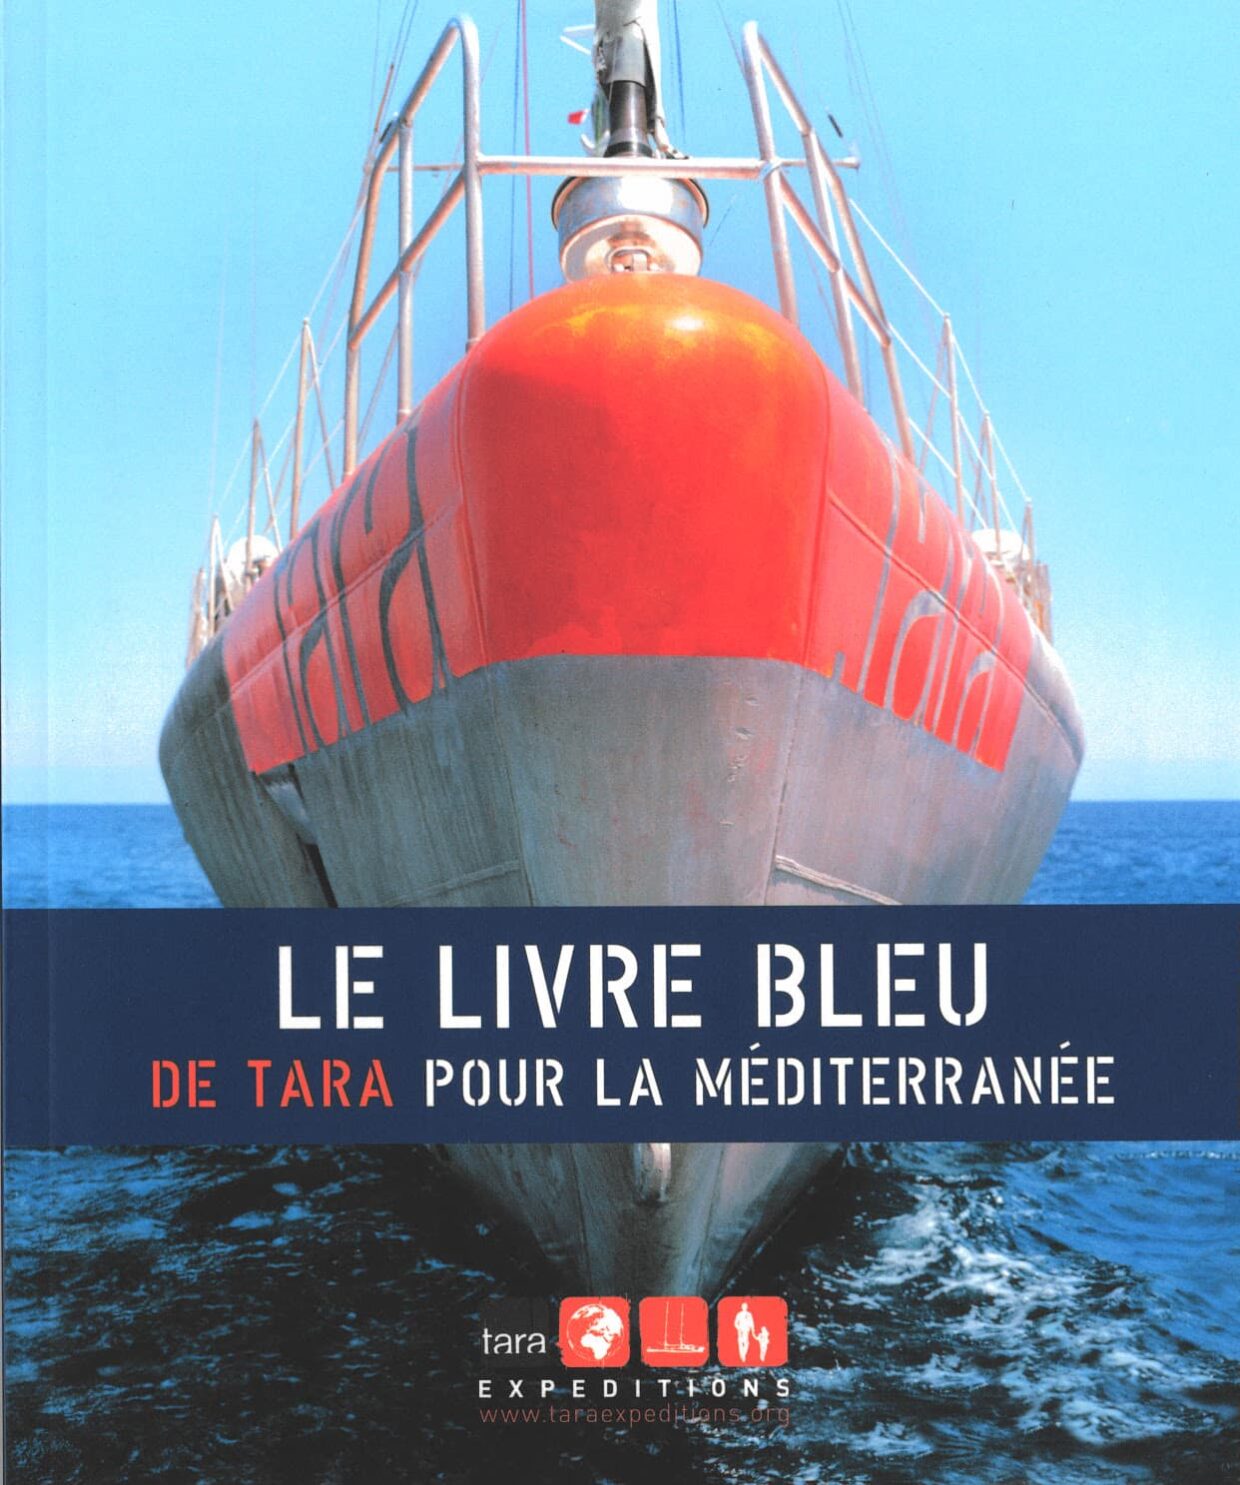 Couverture du livre bleu de Tara pour la méditerranée